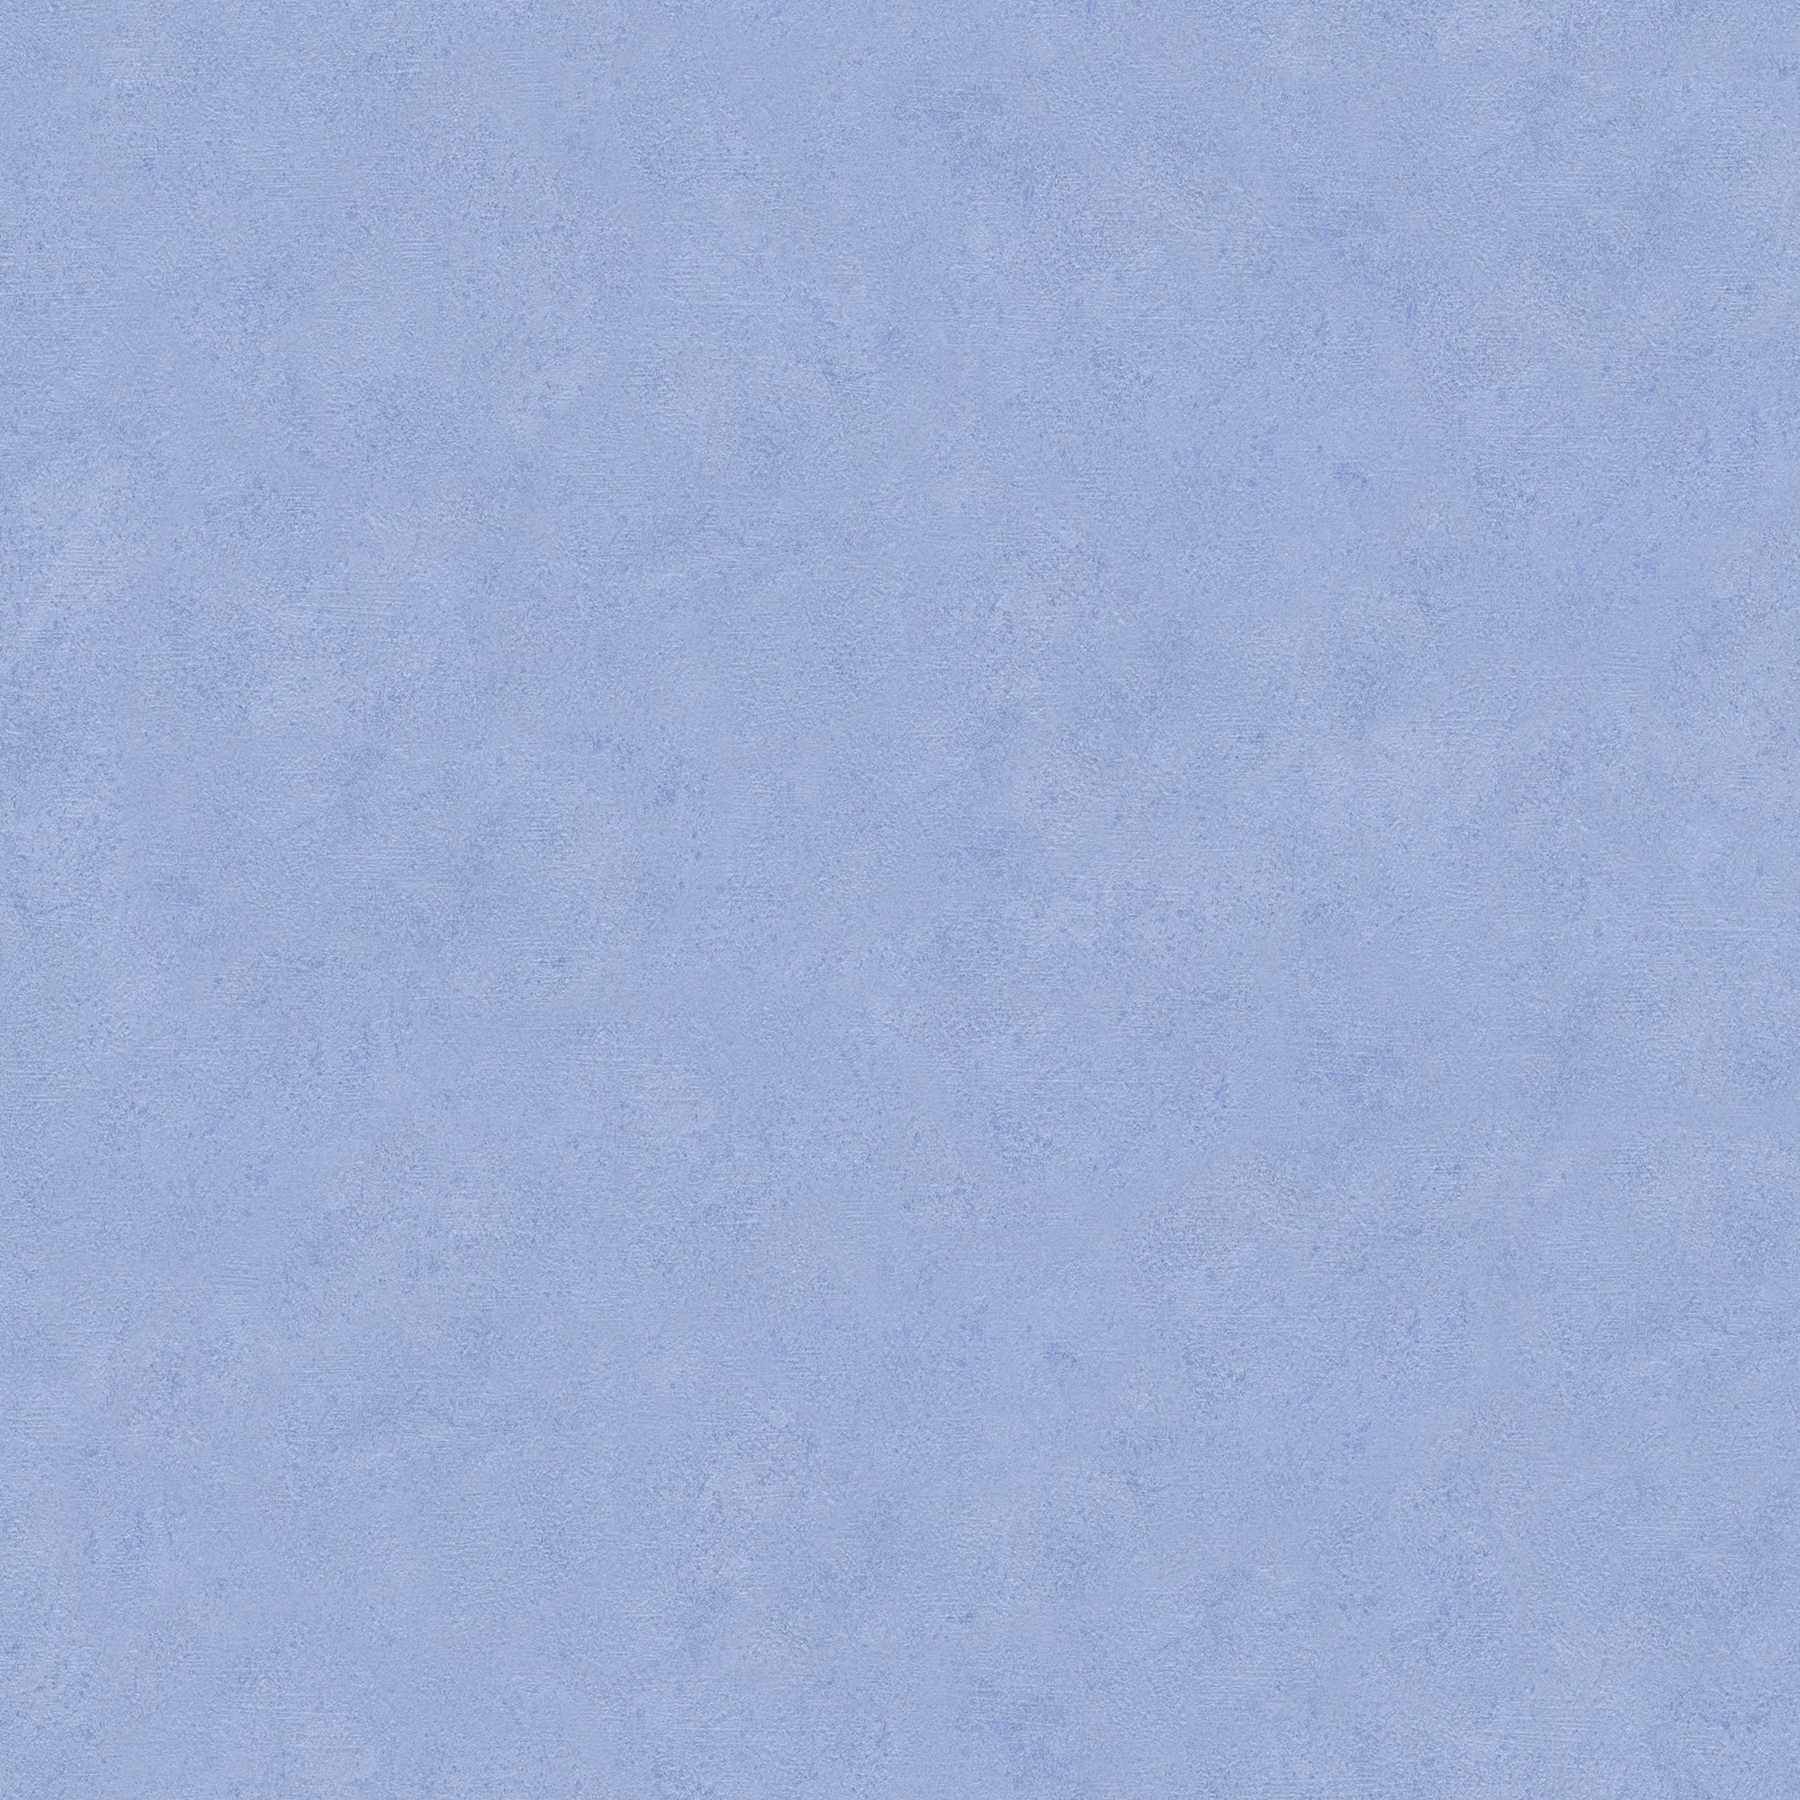 Blauw luik & structuurpatroon papierbehang - Blauw
